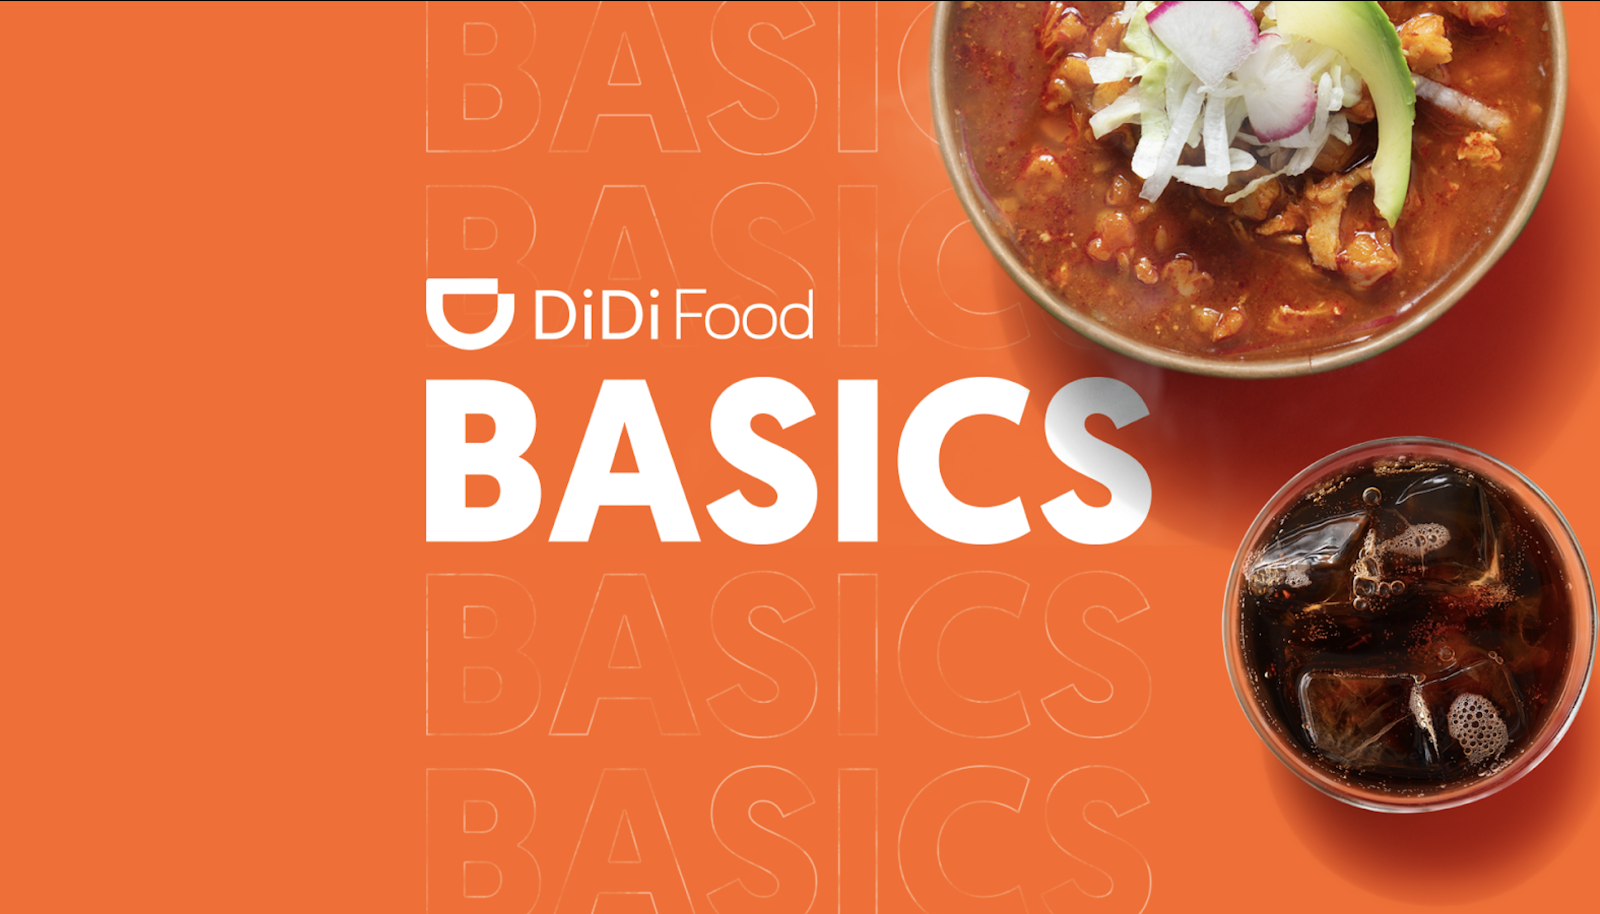 Didi Food Basics: Conoce esta opción de menús completos desde 50 varos